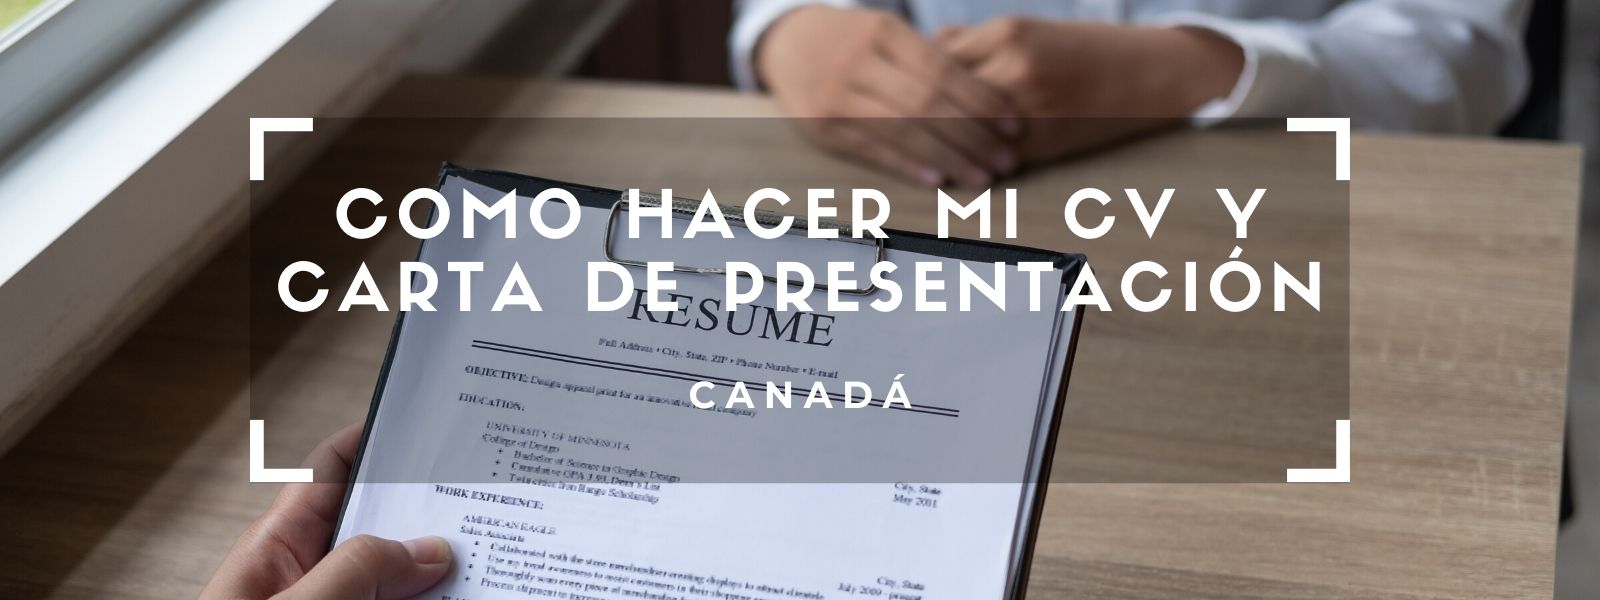 Formato Del Curriculum Cv En Canada Resume Un Espanol En Toronto